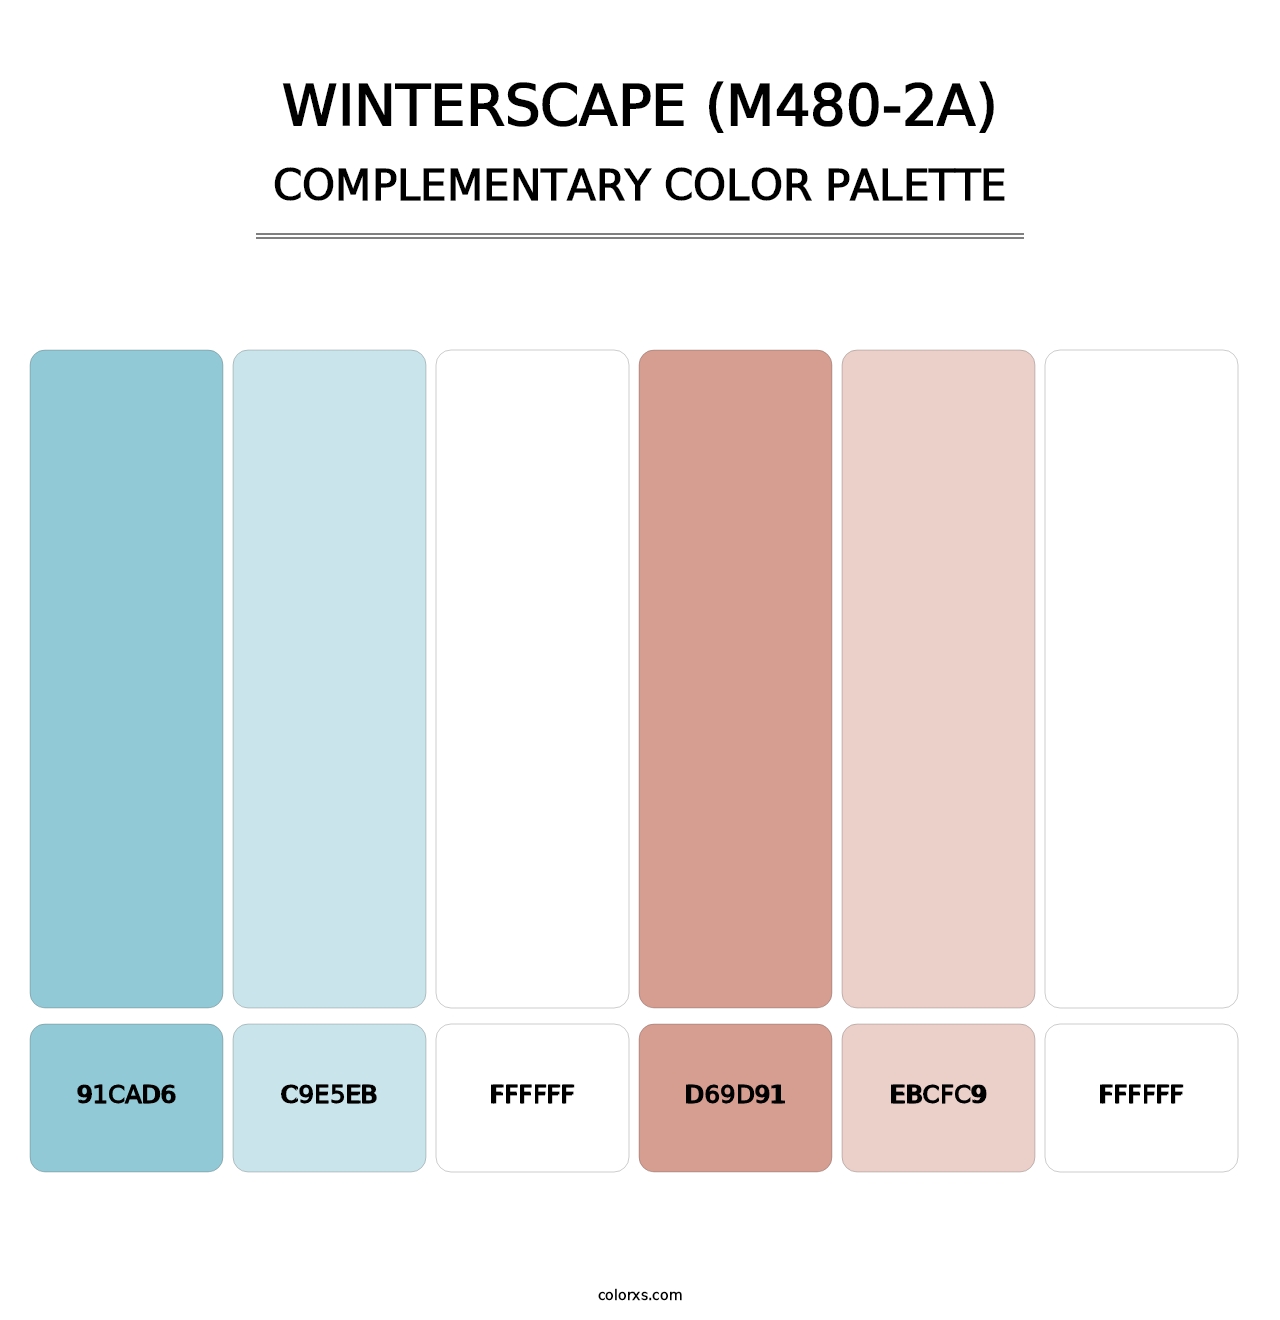 Winterscape (M480-2A) - Complementary Color Palette